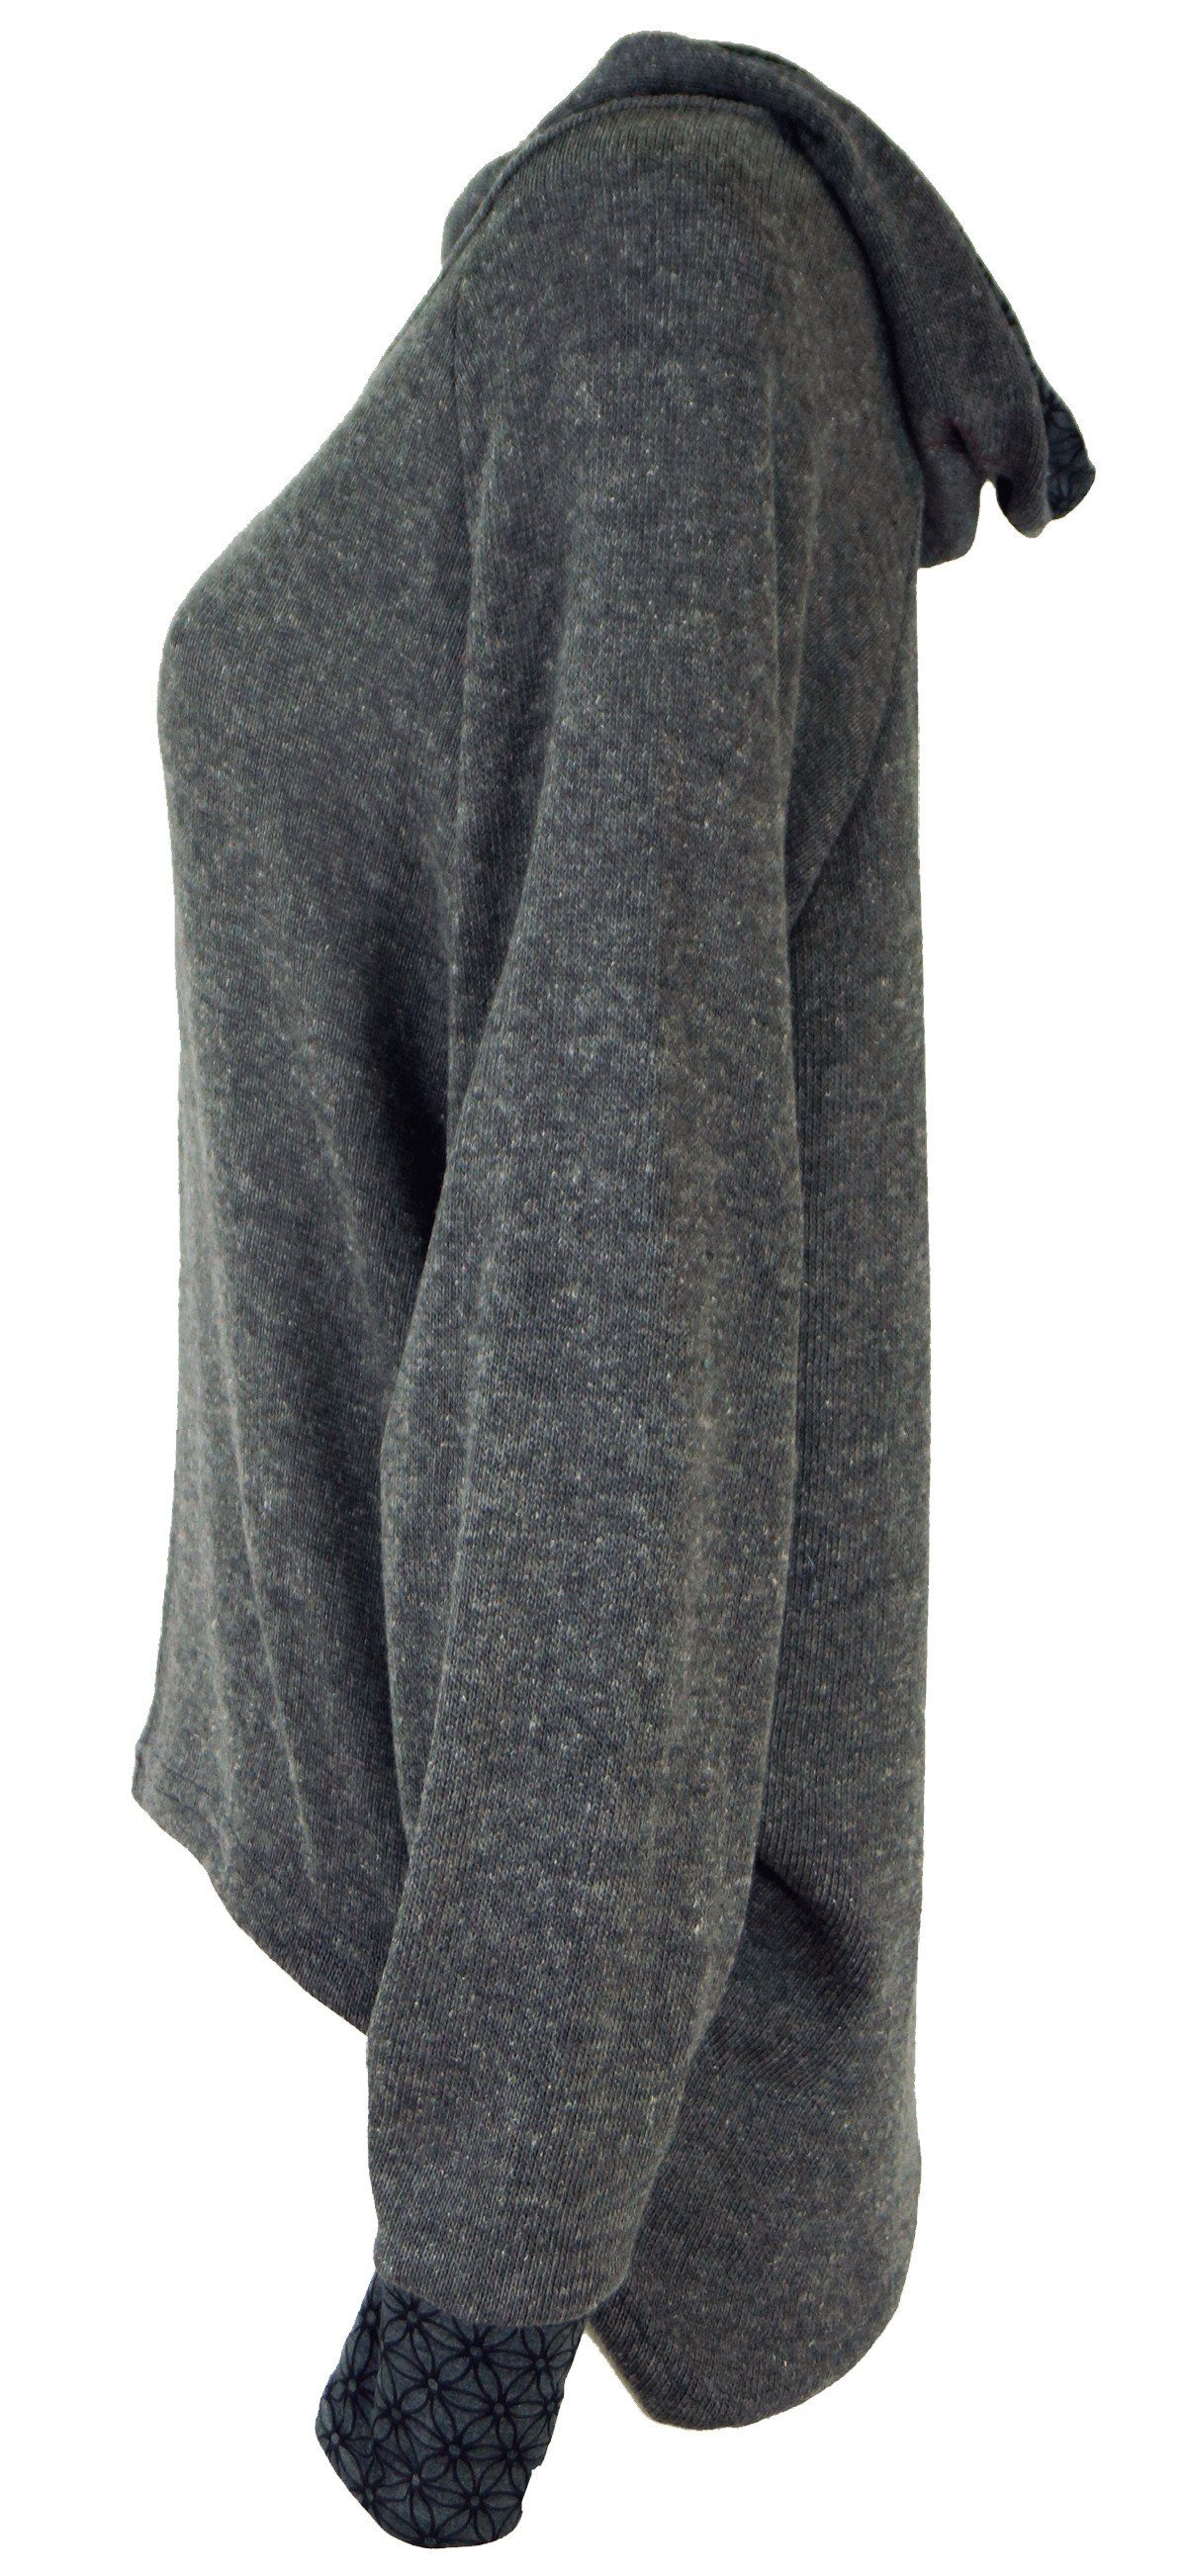 Guru-Shop Longsleeve Pullover, Sweatshirt, Hoody, Bekleidung grau alternative Kapuzenpullover 